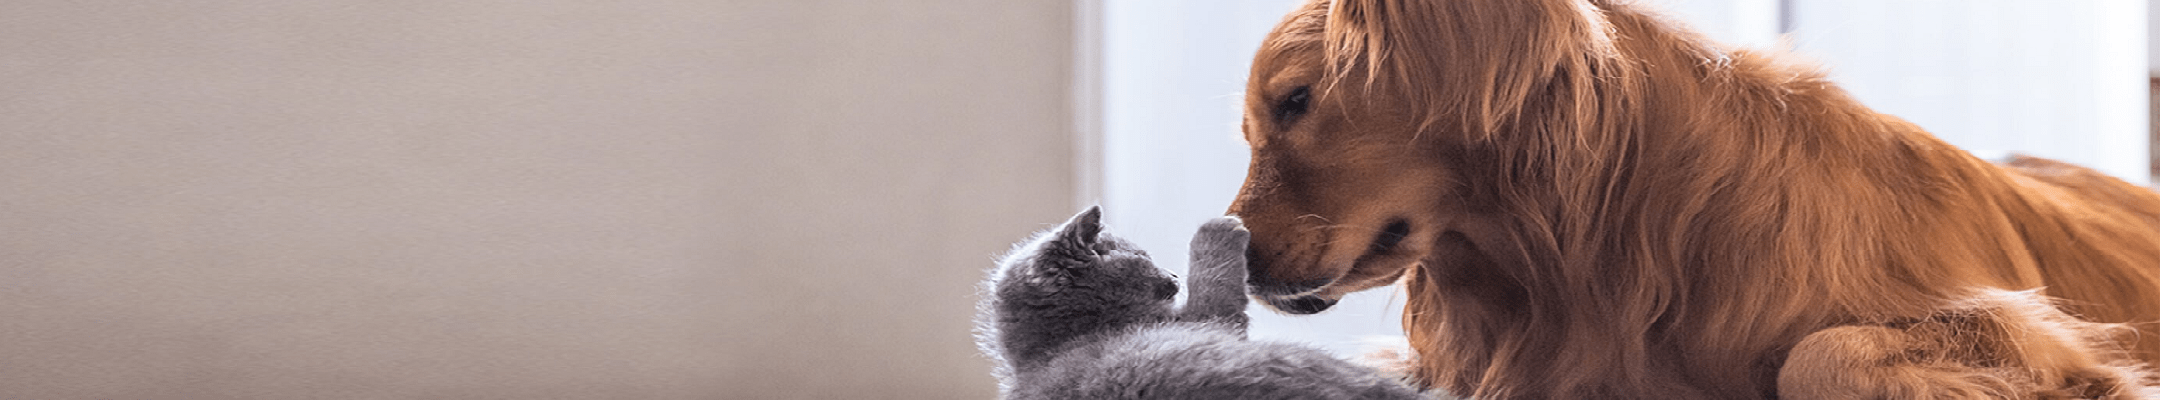 Tratamento de pulgas Advantage® para cães e gatos